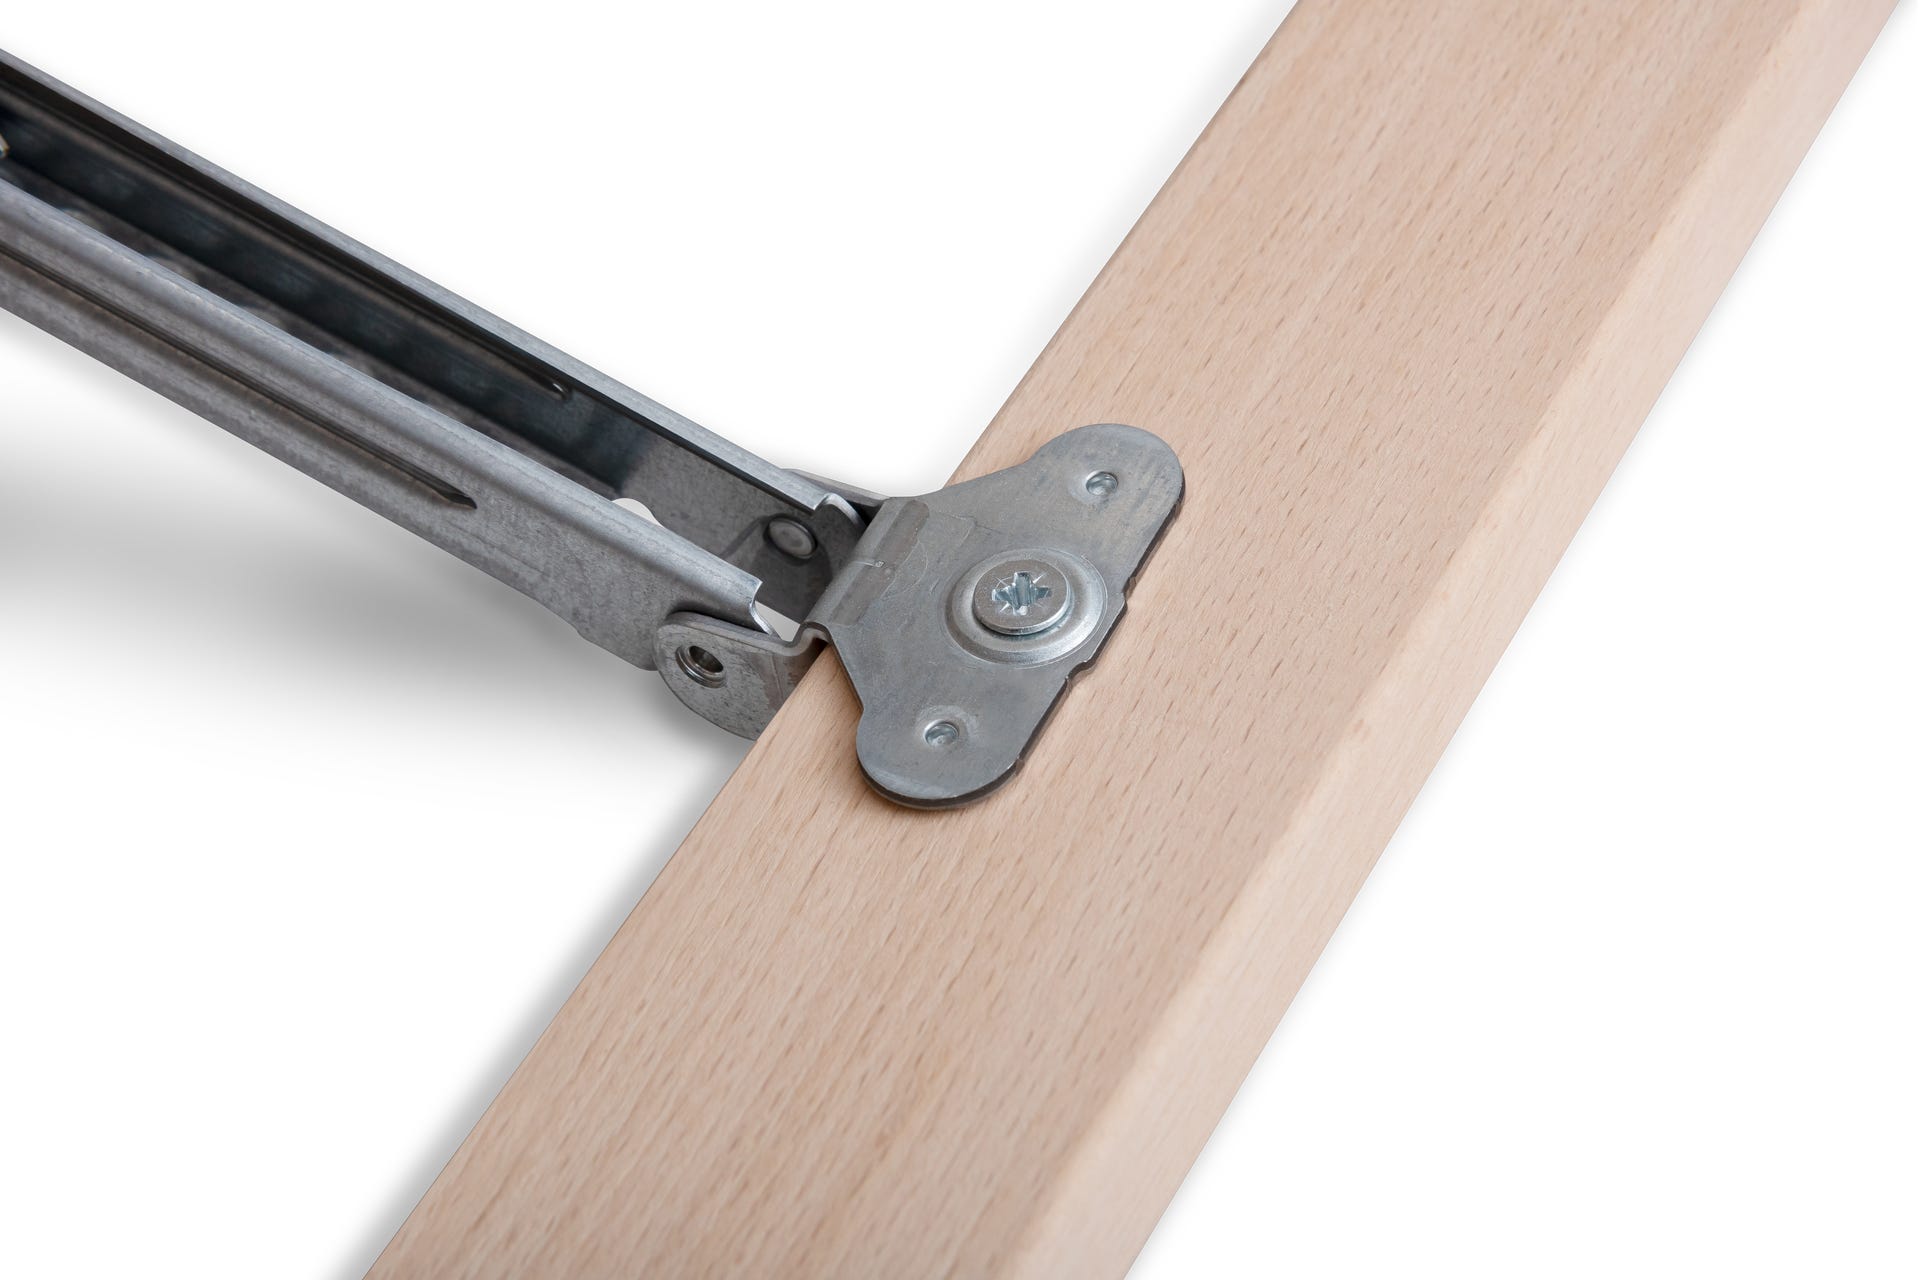 emma-dach-slatted-frame-v02-detail-head-adjustment-hinge-screws.png